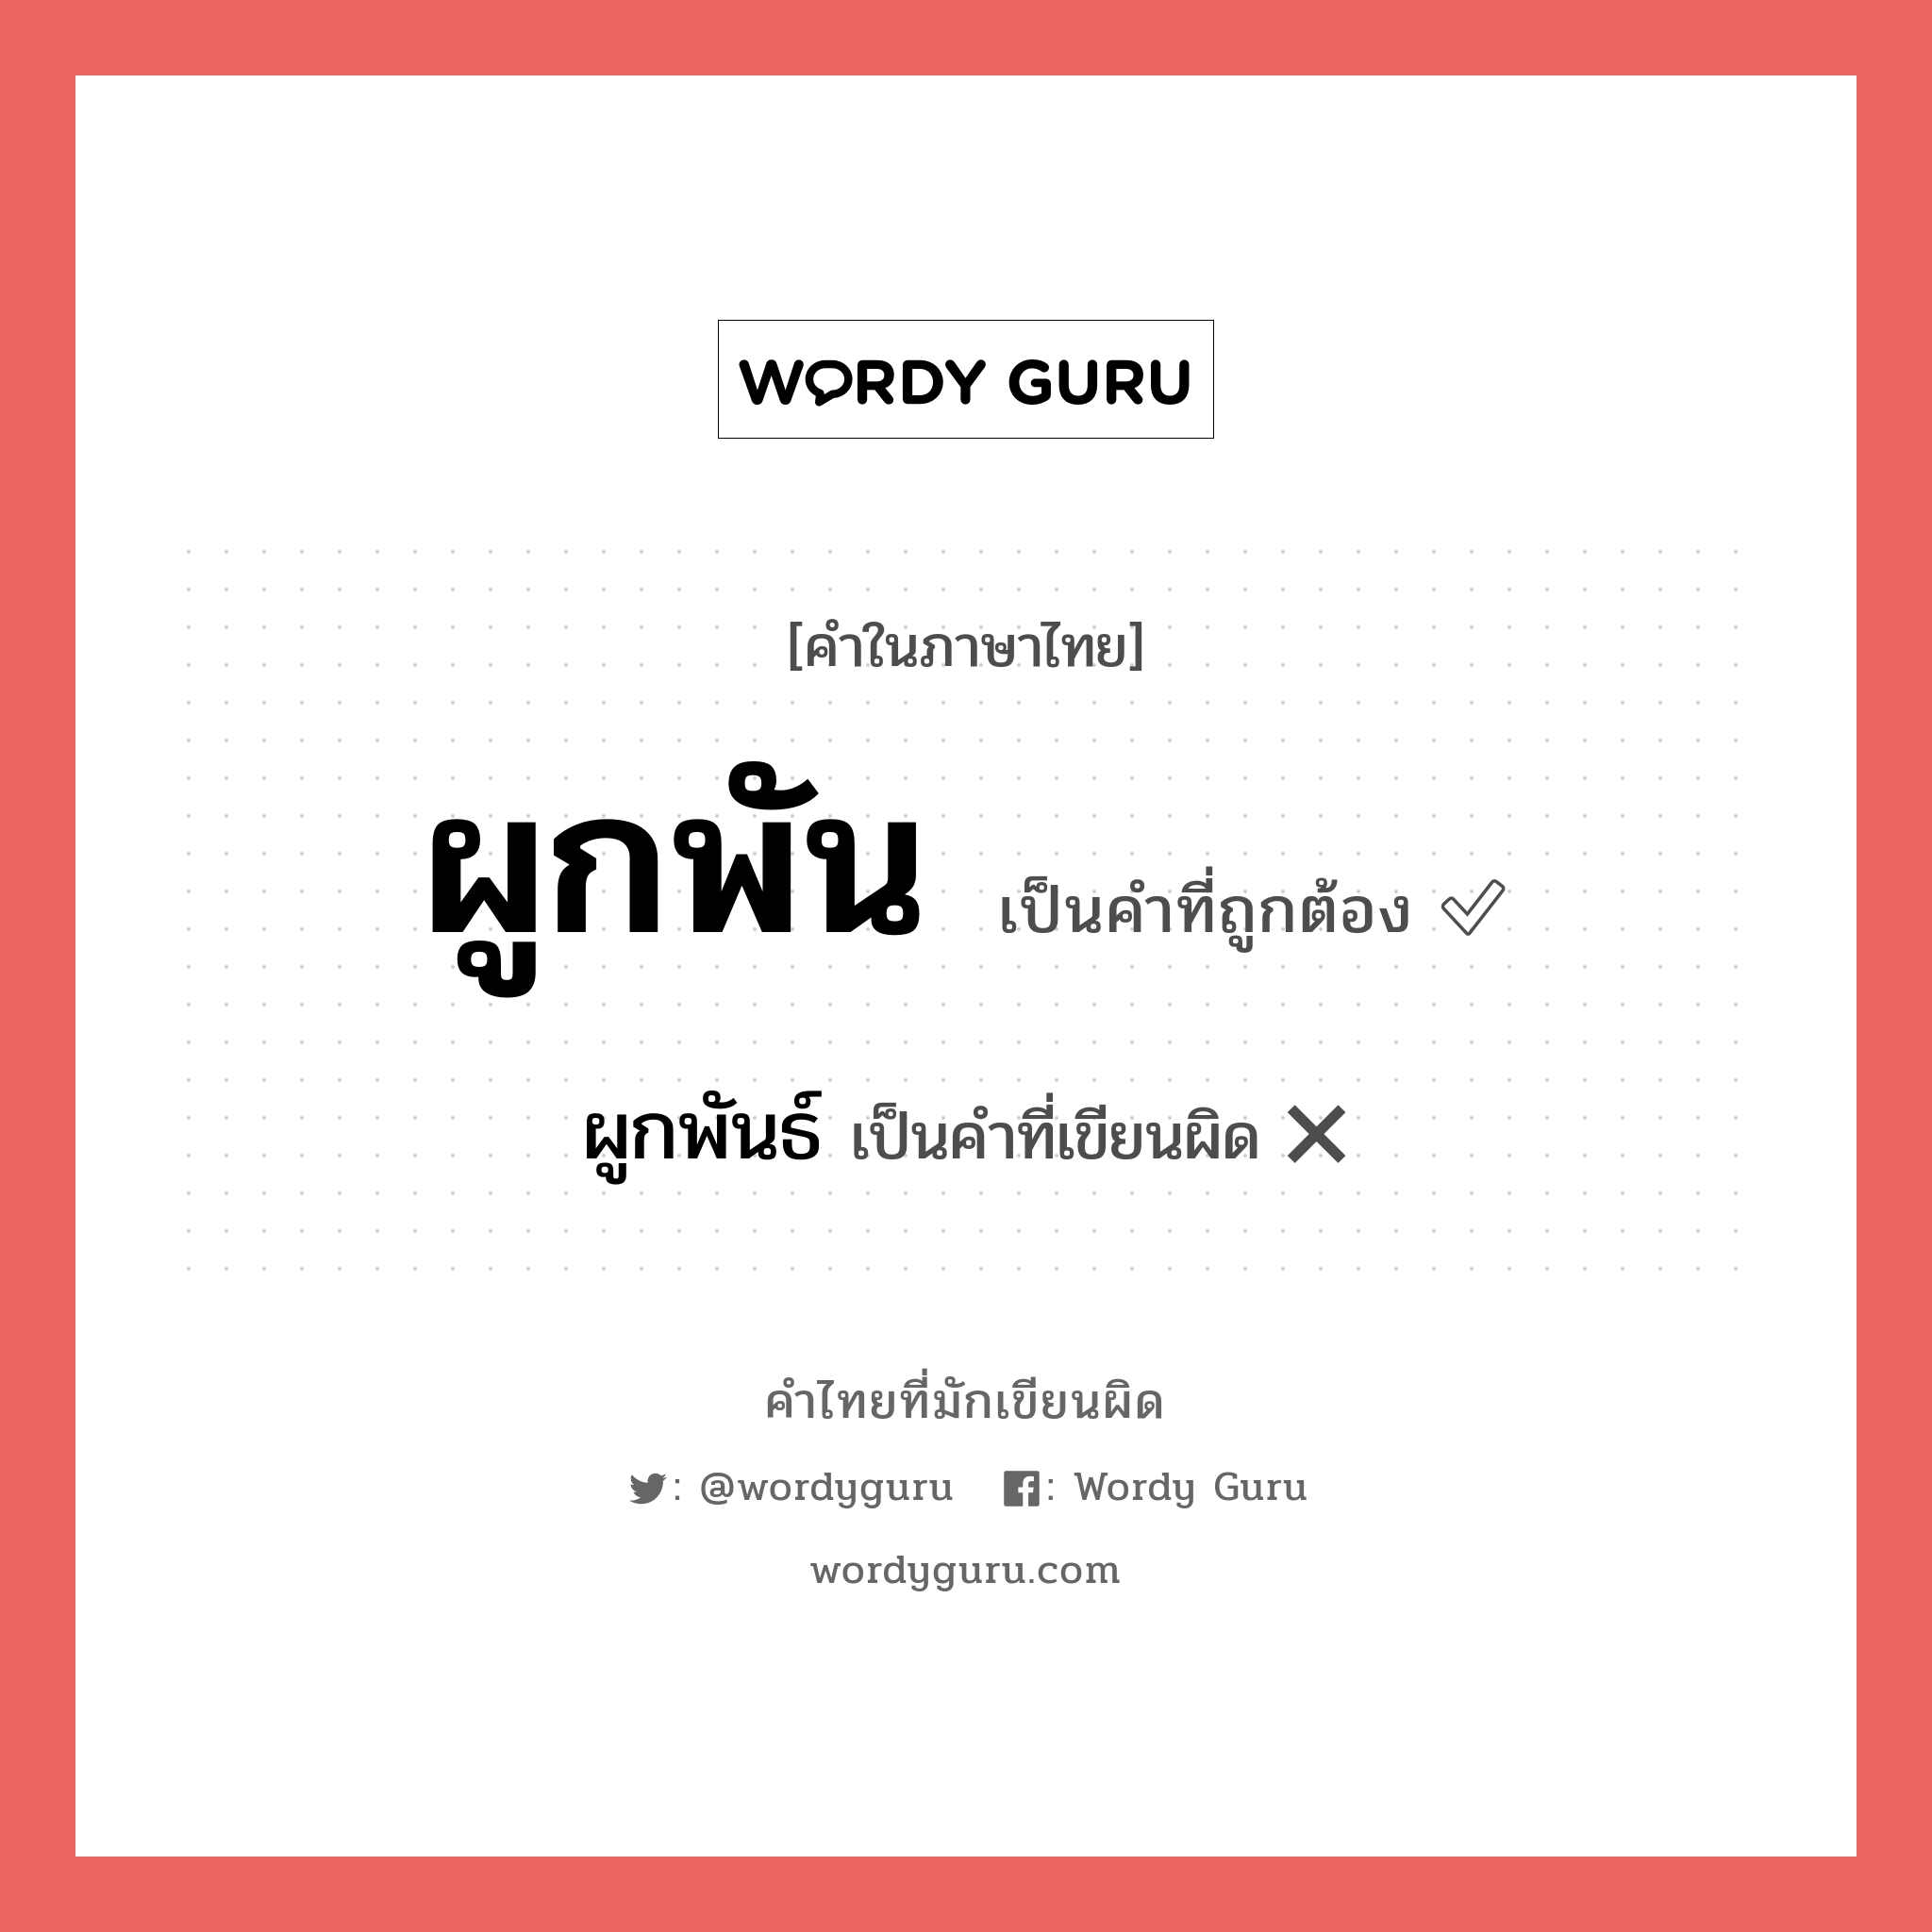 ผูกพัน หรือ ผูกพันธ์ คำไหนเขียนถูก?, คำในภาษาไทยที่มักเขียนผิด ผูกพัน คำที่ผิด ❌ ผูกพันธ์